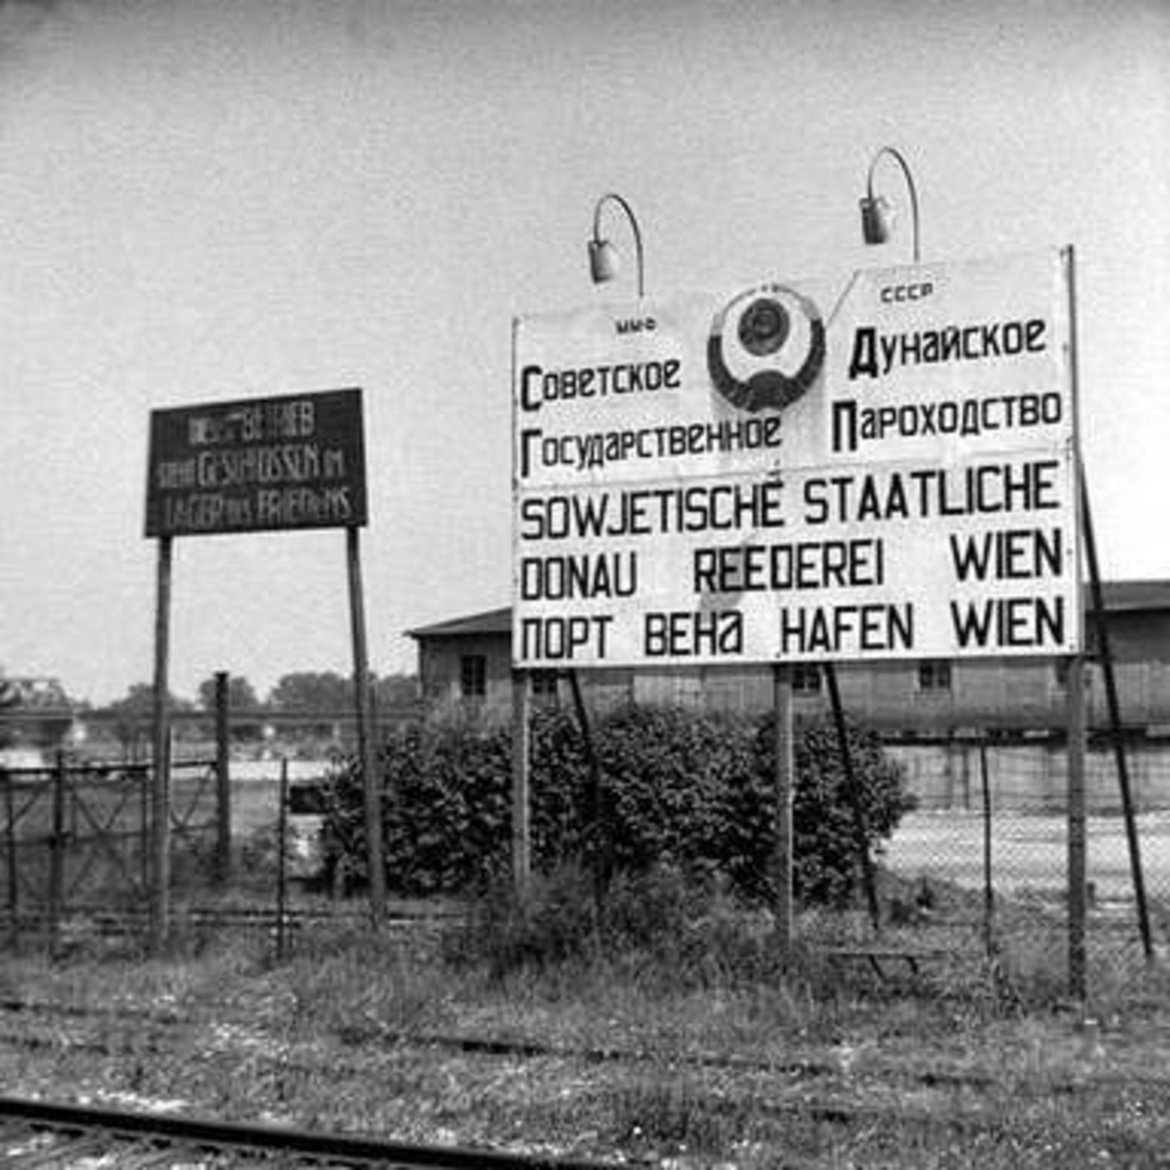 Schild mit Aufschrift Sowjetische staatliche Donau Reederei Wien - Hafen Wien und russische Übersetzung in cyrilischen Buchstaben